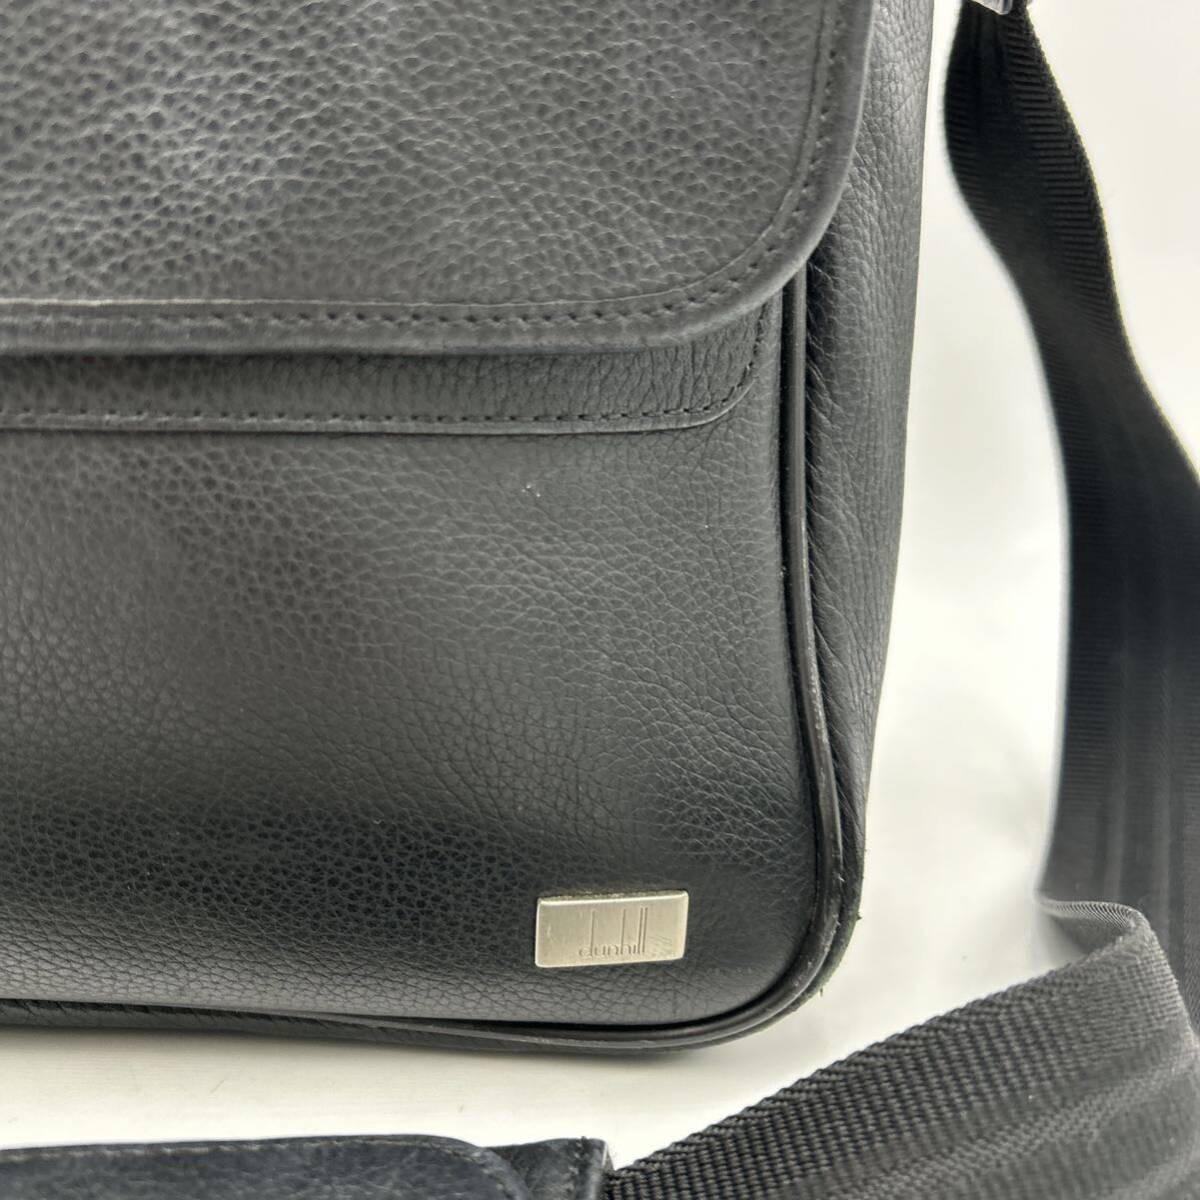 B ■ 極上レザー使用 '高級紳士鞄' dunhill ダンヒル 本革 ビジネスバッグ メッセンジャーバッグ 斜め掛け鞄 ショルダーバッグ BLACK 黒の画像2